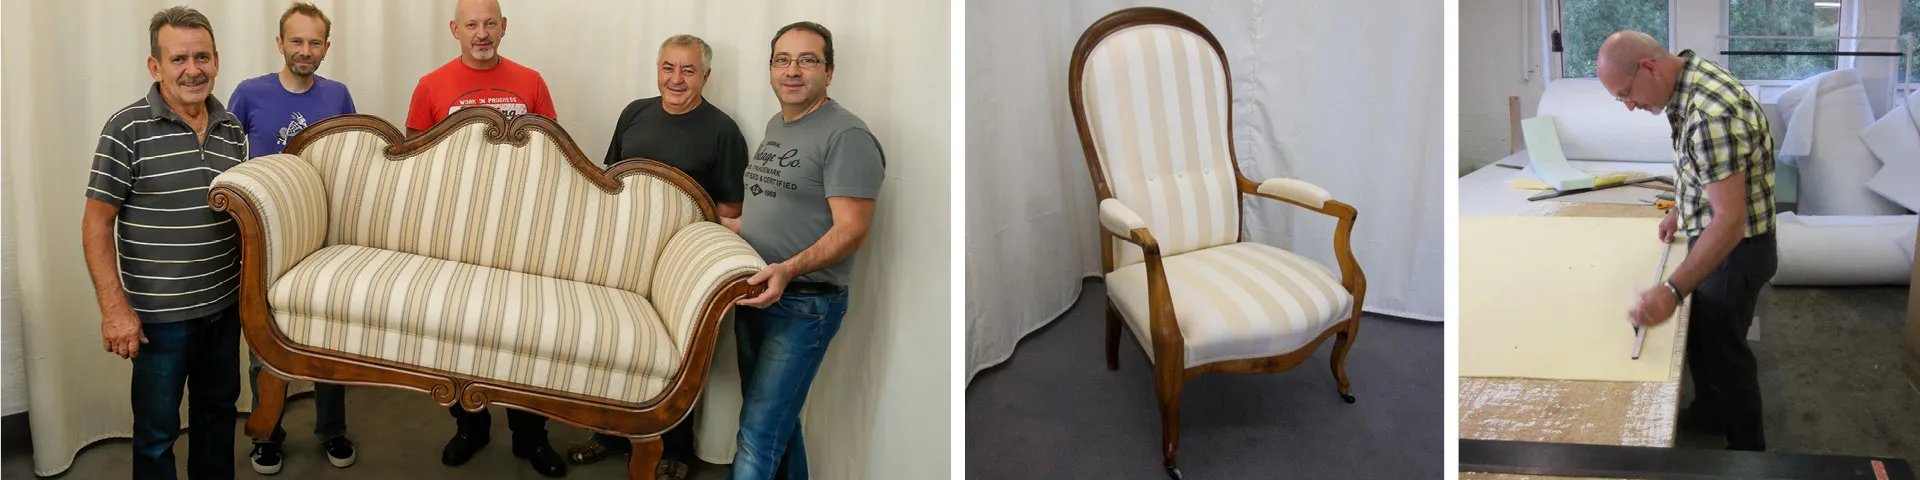 Fünf Männer halten restauriertes Polstersofa, Stuhl aus der Polsterei in Dortmund, Polsterer bei der Arbeit